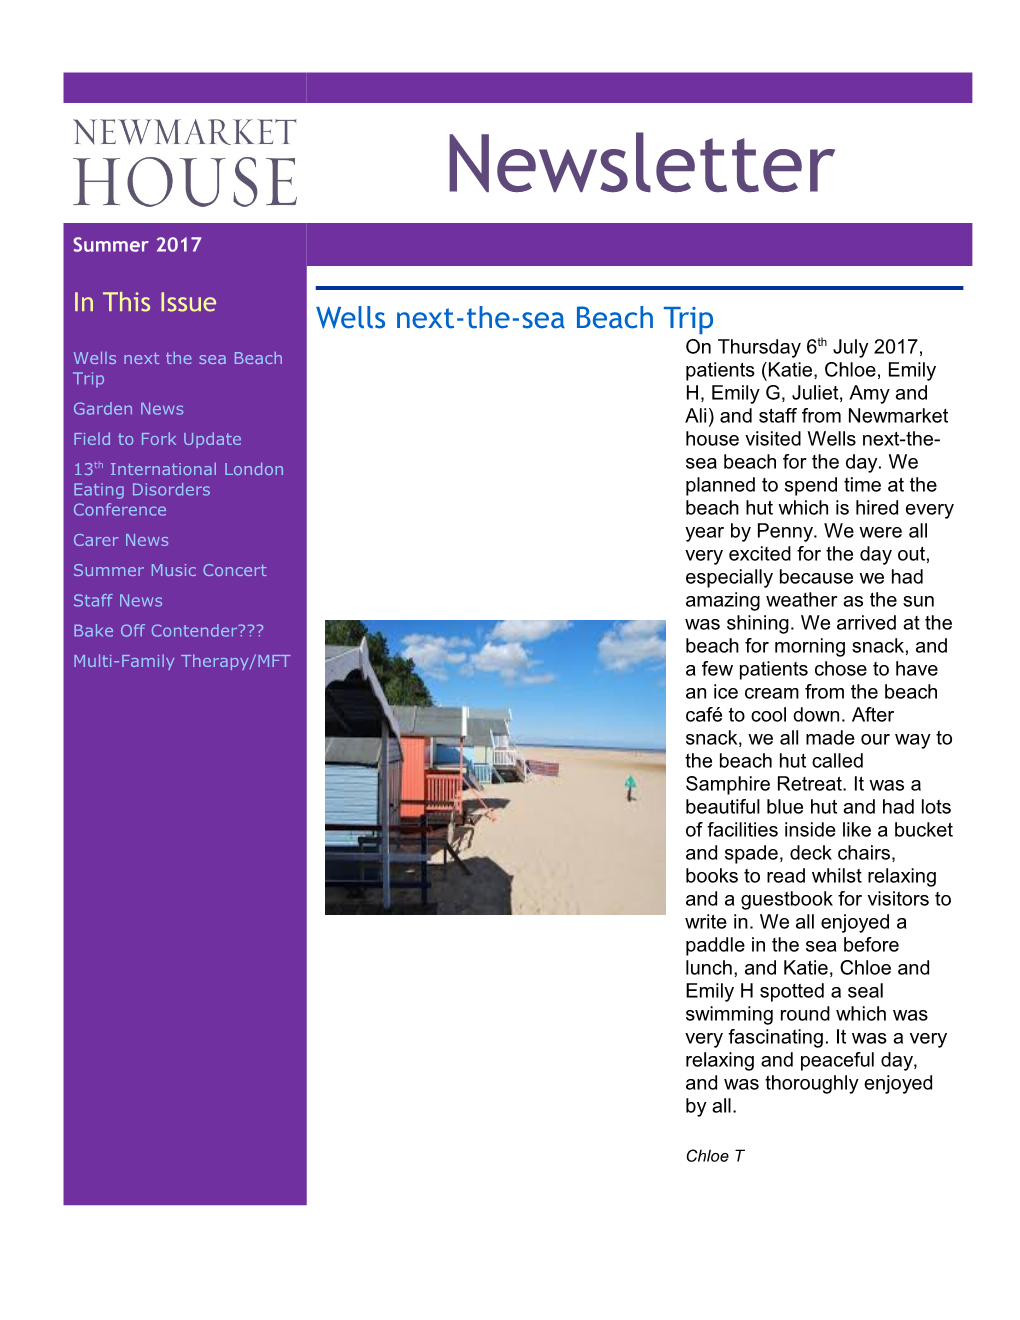 Wells Next-The-Sea Beach Trip